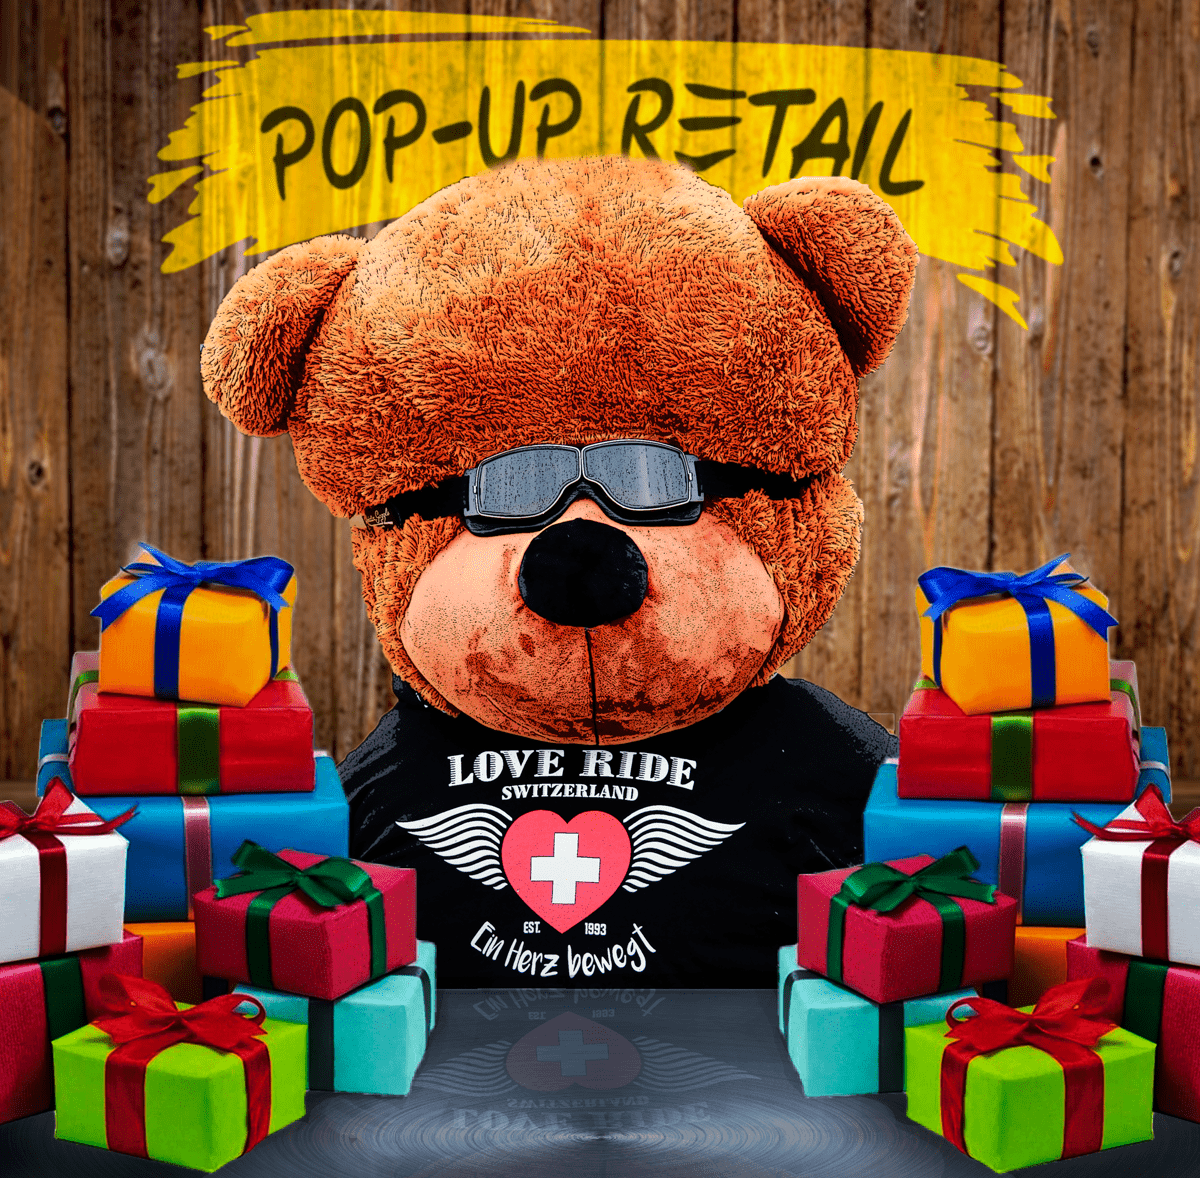 Love Ride 28 - Pop-up-Retail